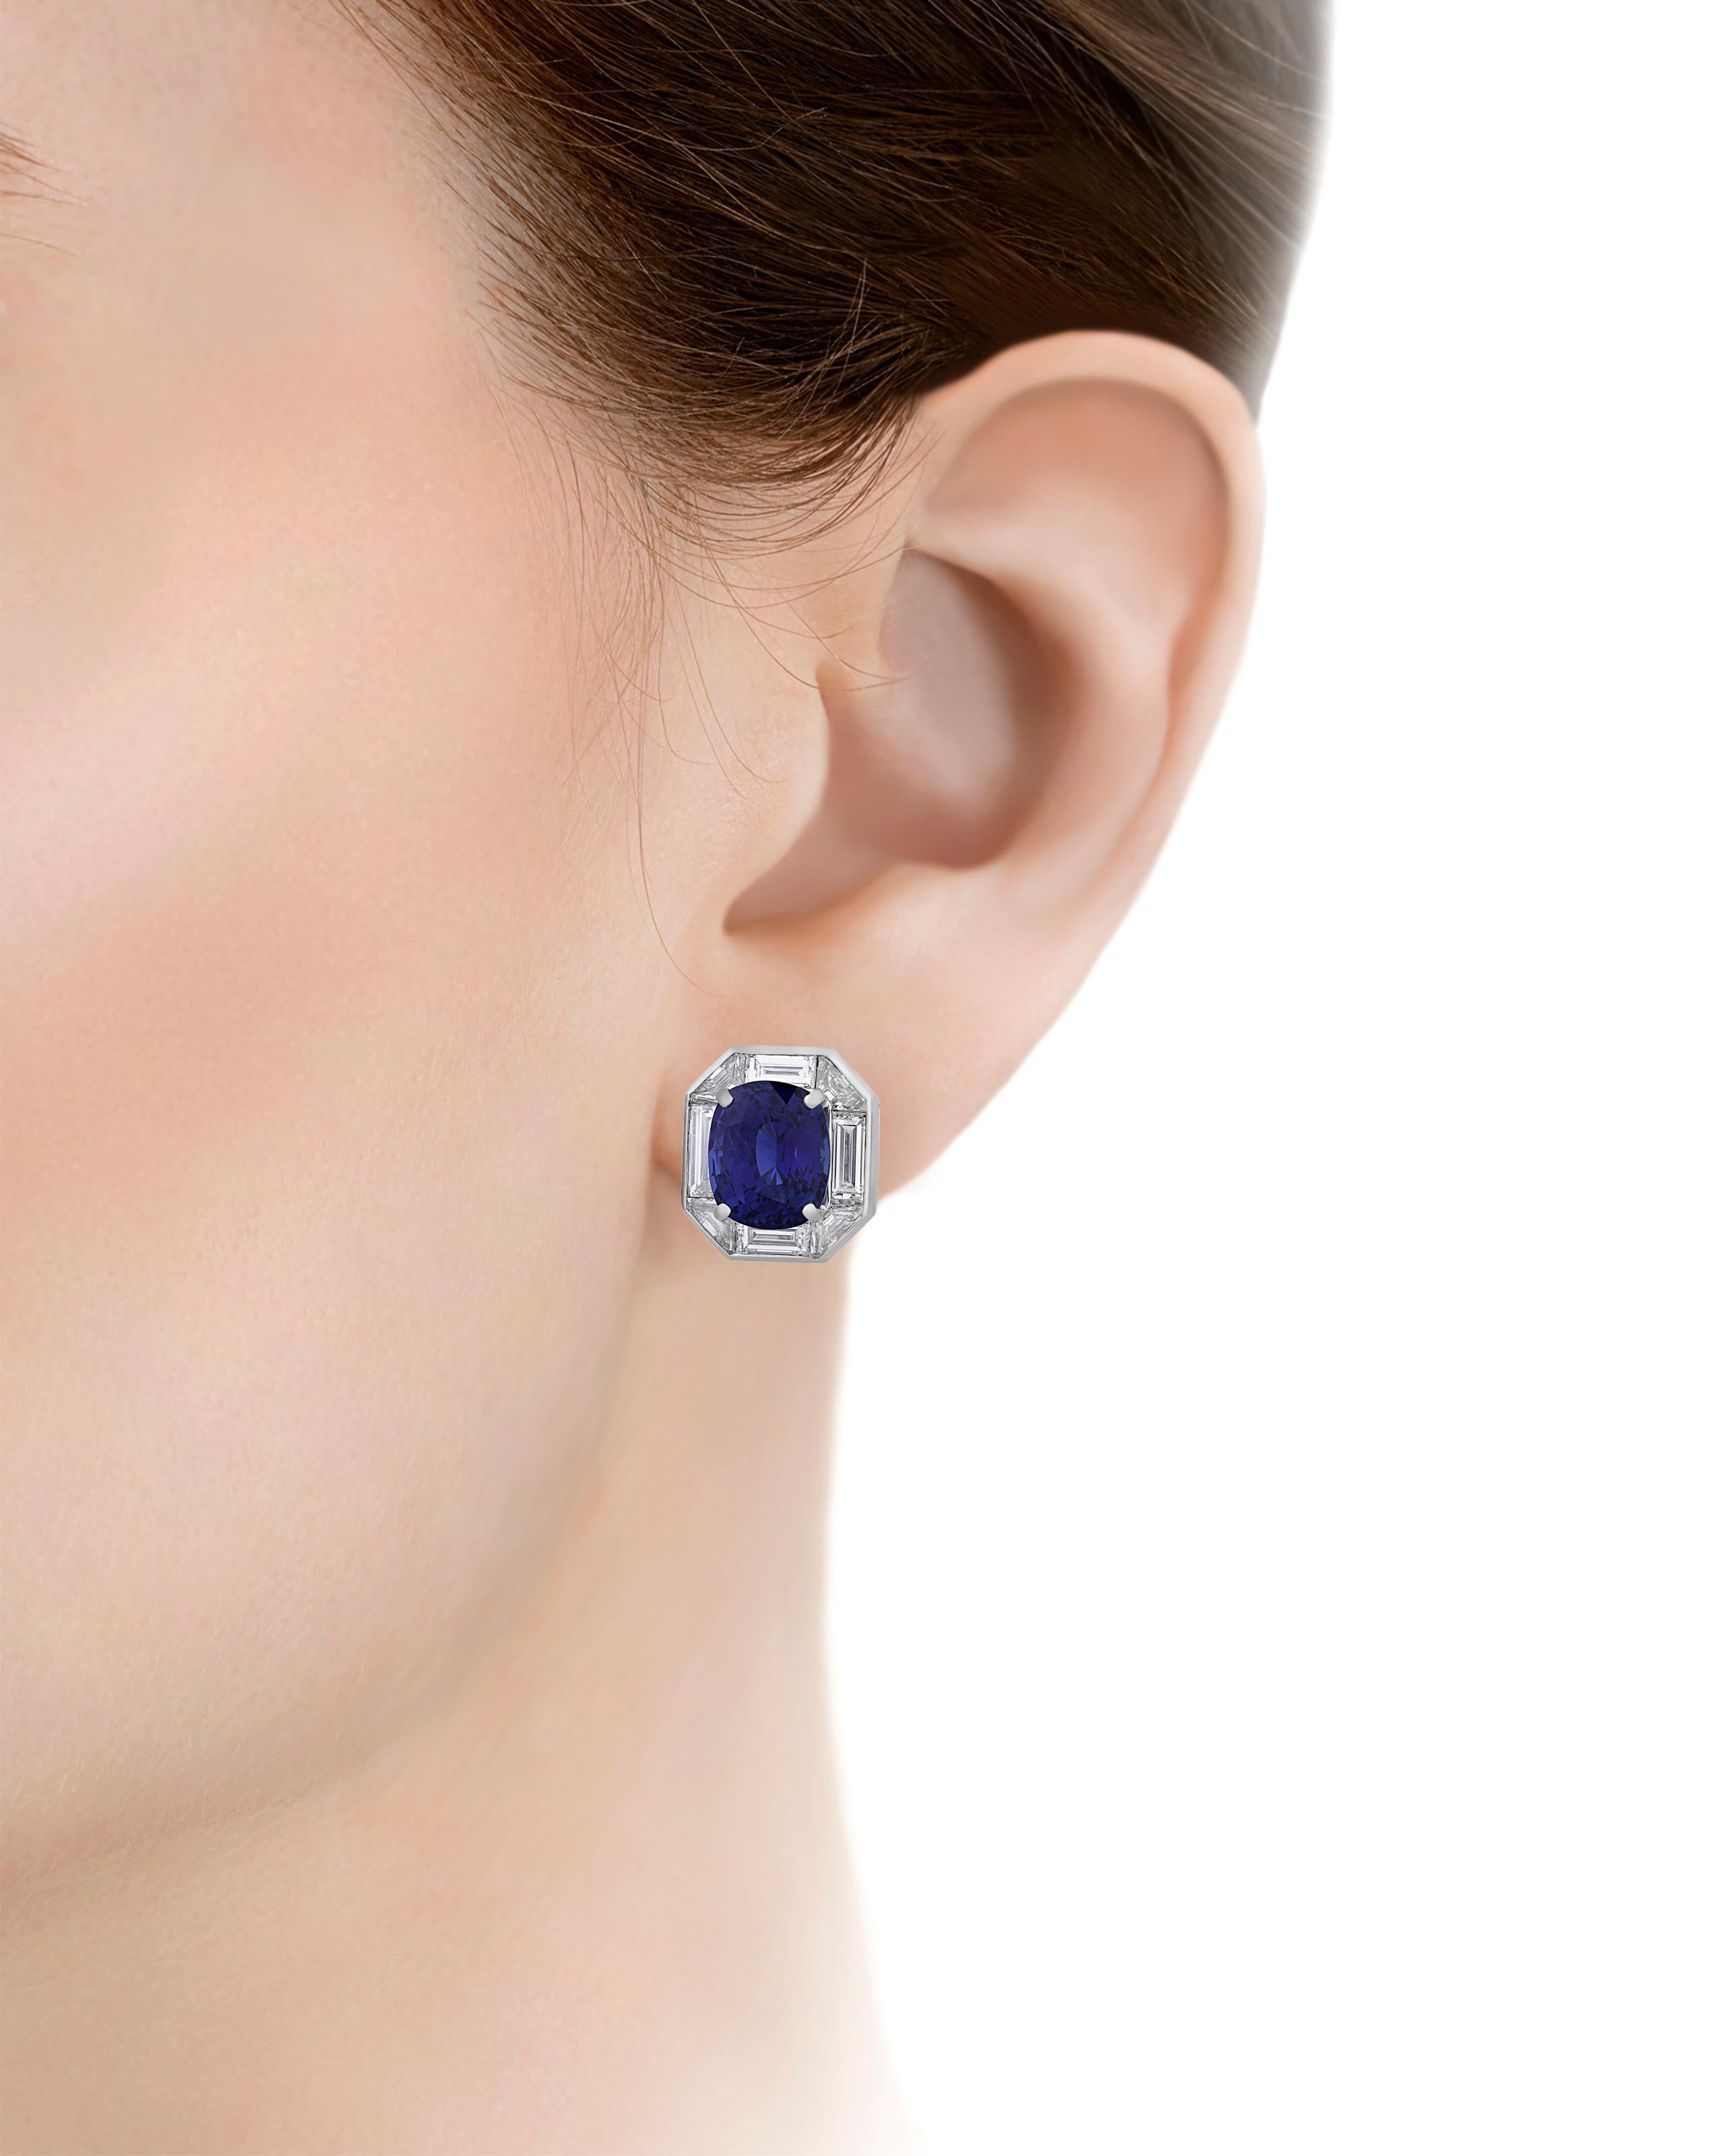 Zwei beeindruckende Ceylon-Saphire im Kissenschliff mit insgesamt 10,60 Karat sind in diesen glamourösen Ohrringen des famosen Schmuckdesigners Oscar Heyman gefasst. Die Edelsteine haben einen leuchtend 